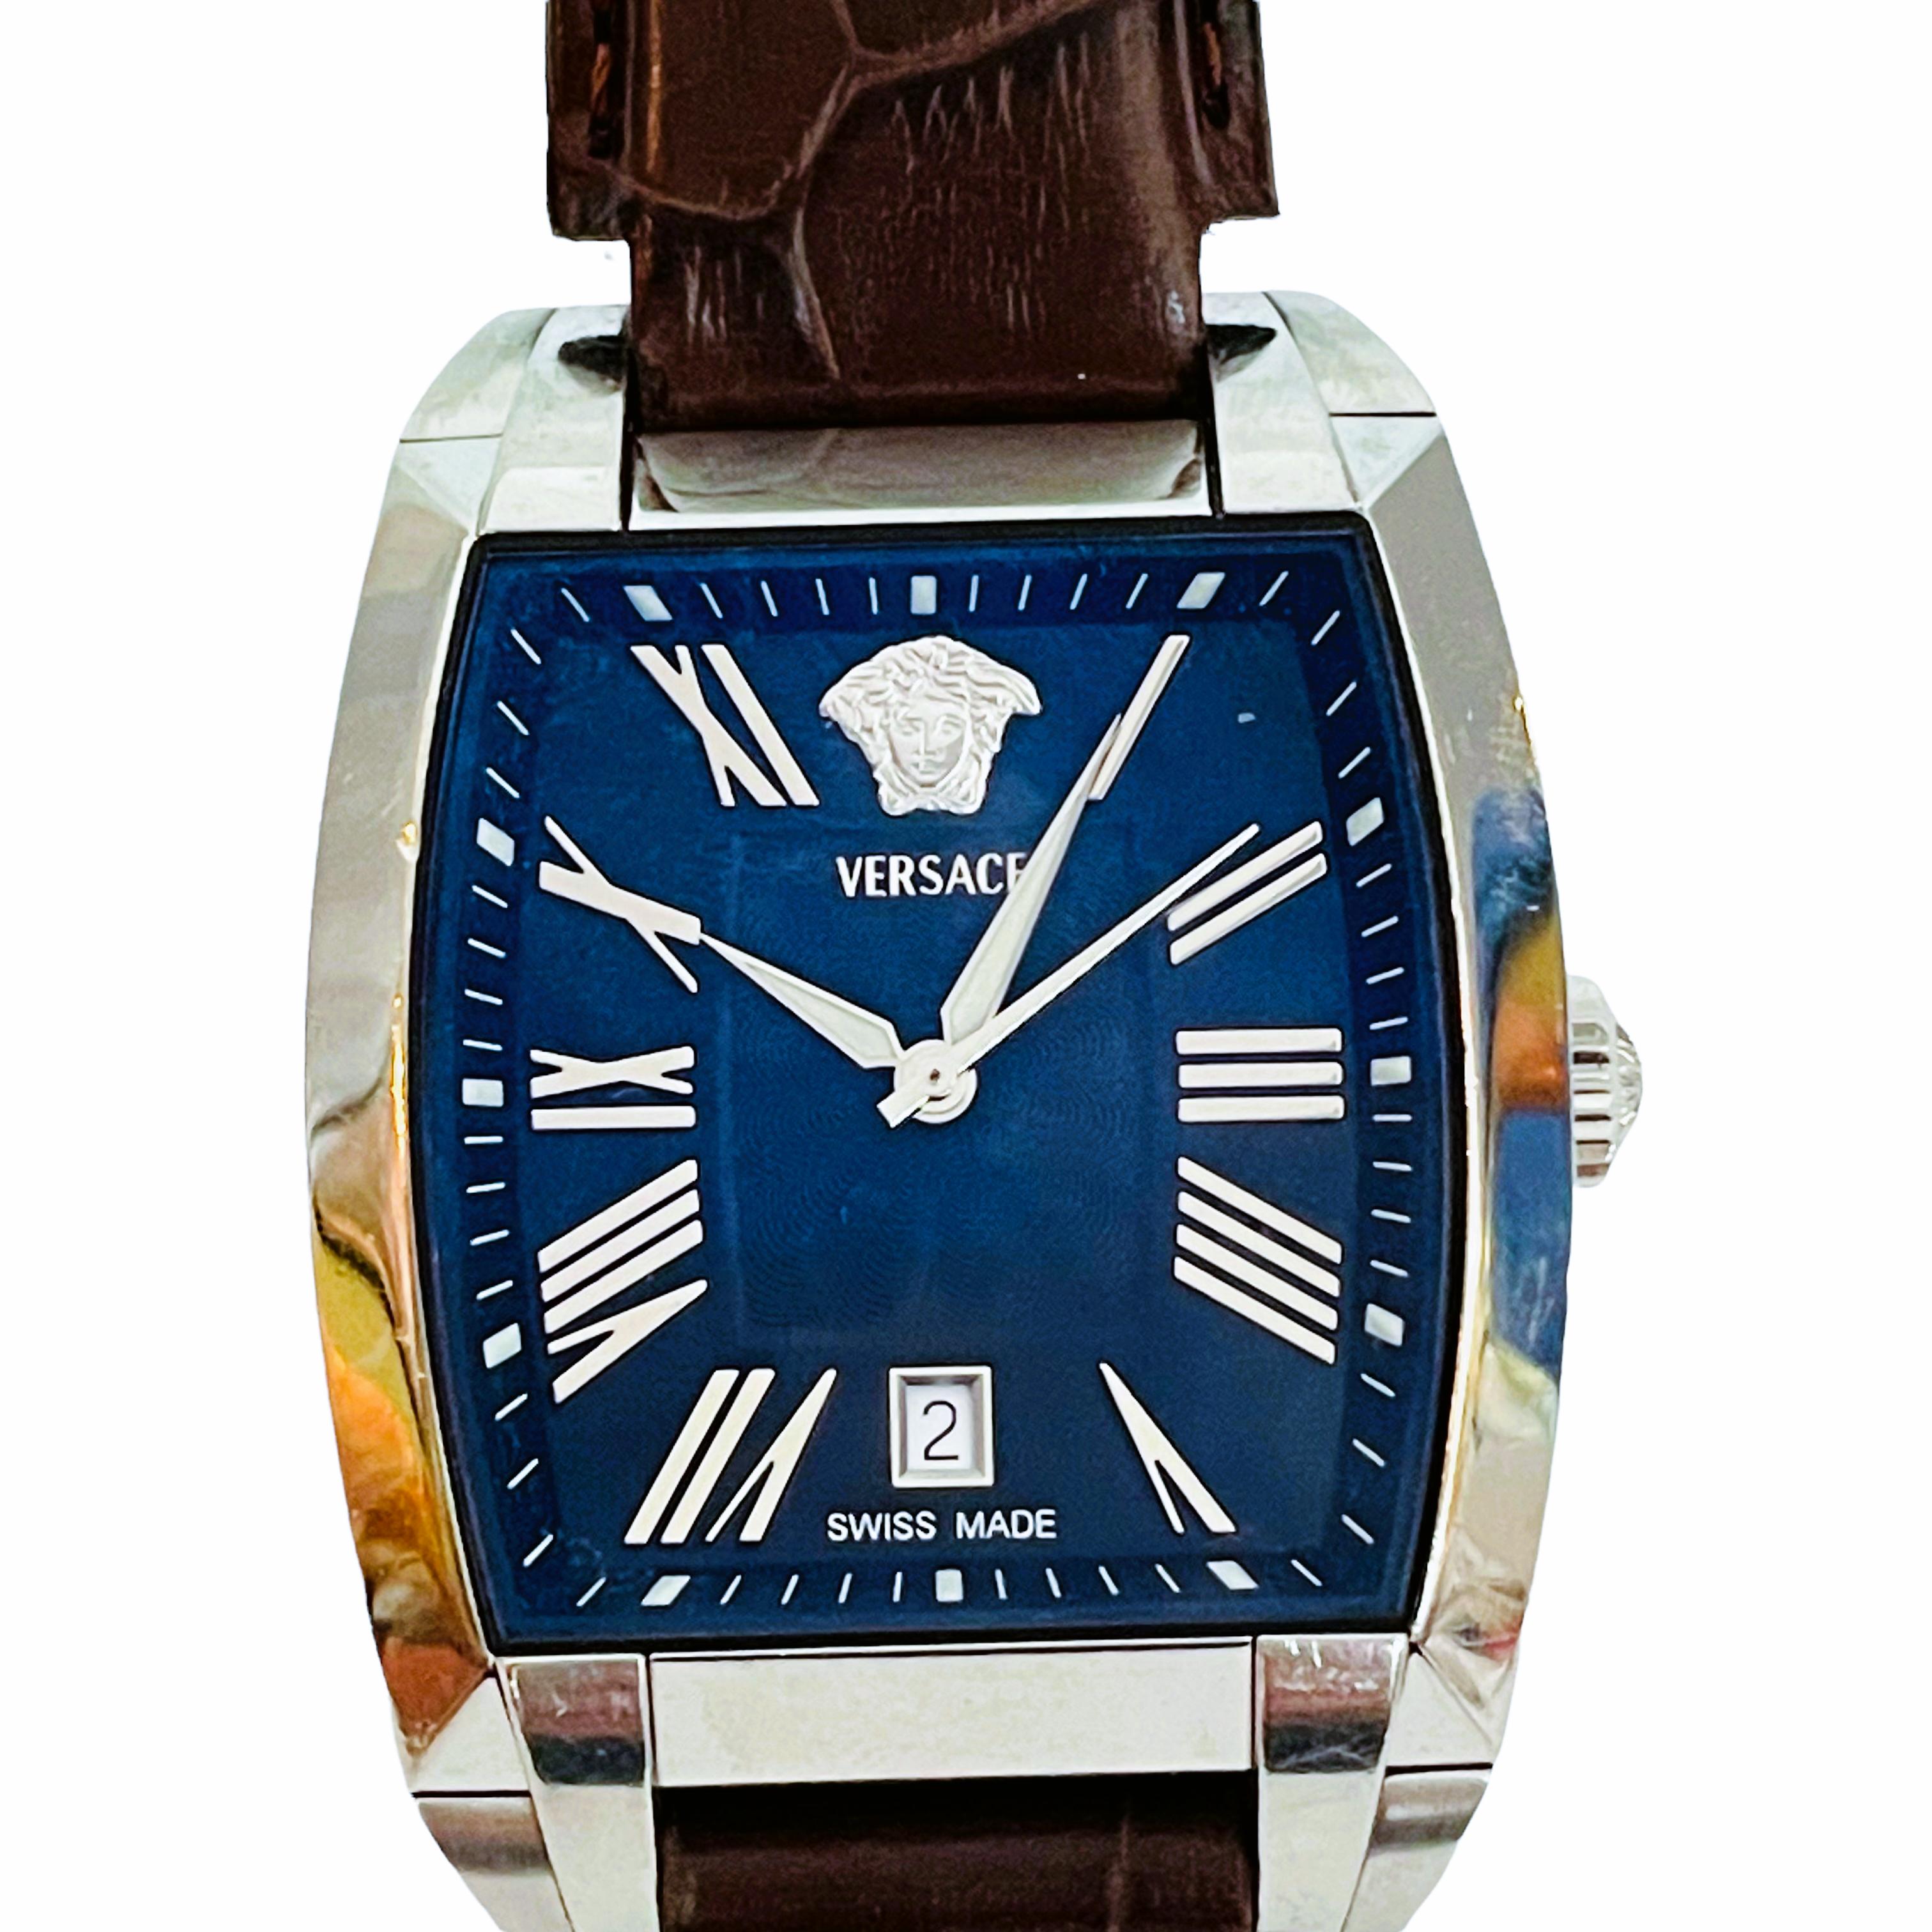 Vintage Versace Tonneau Automatic Men's Watch WLA99 1 3/8in Blue & Black Face 3